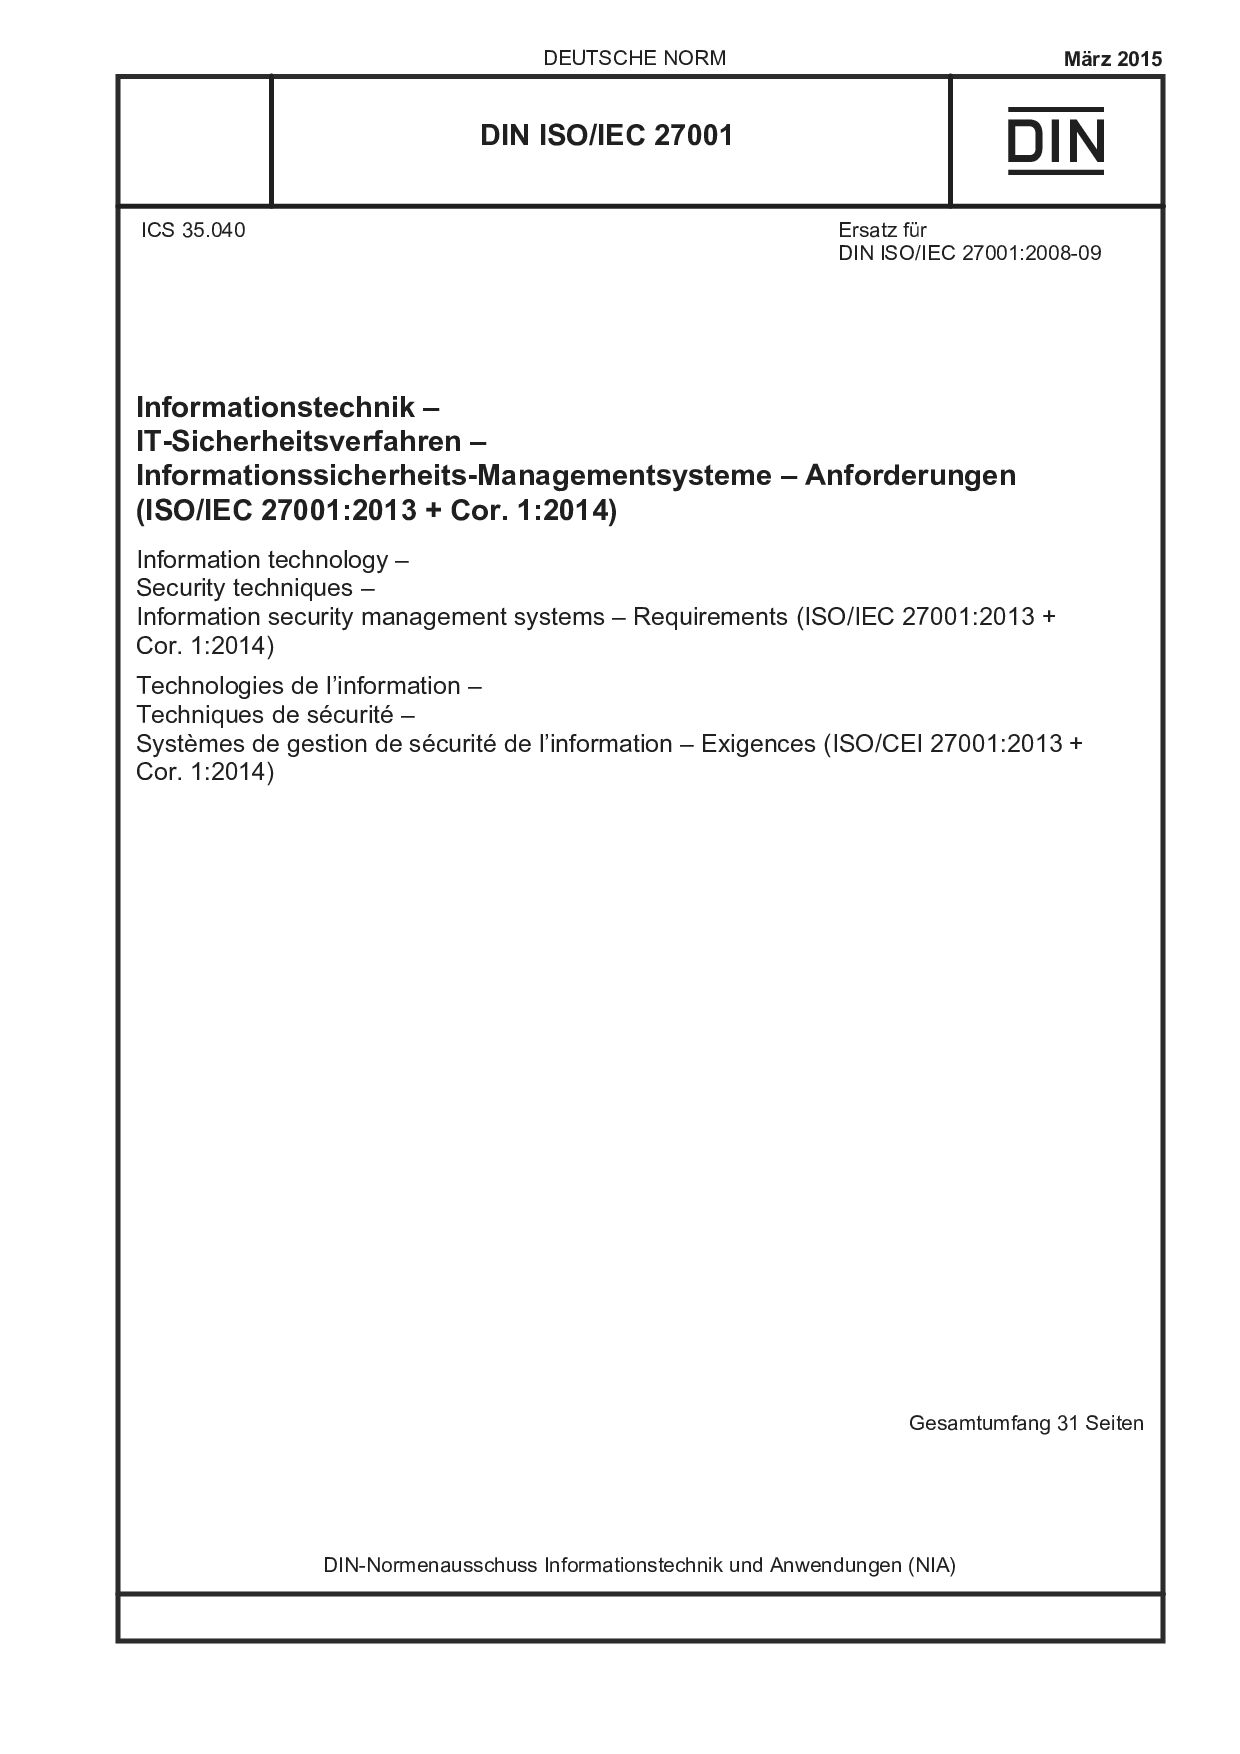 DIN ISO/IEC 27001:2015封面图